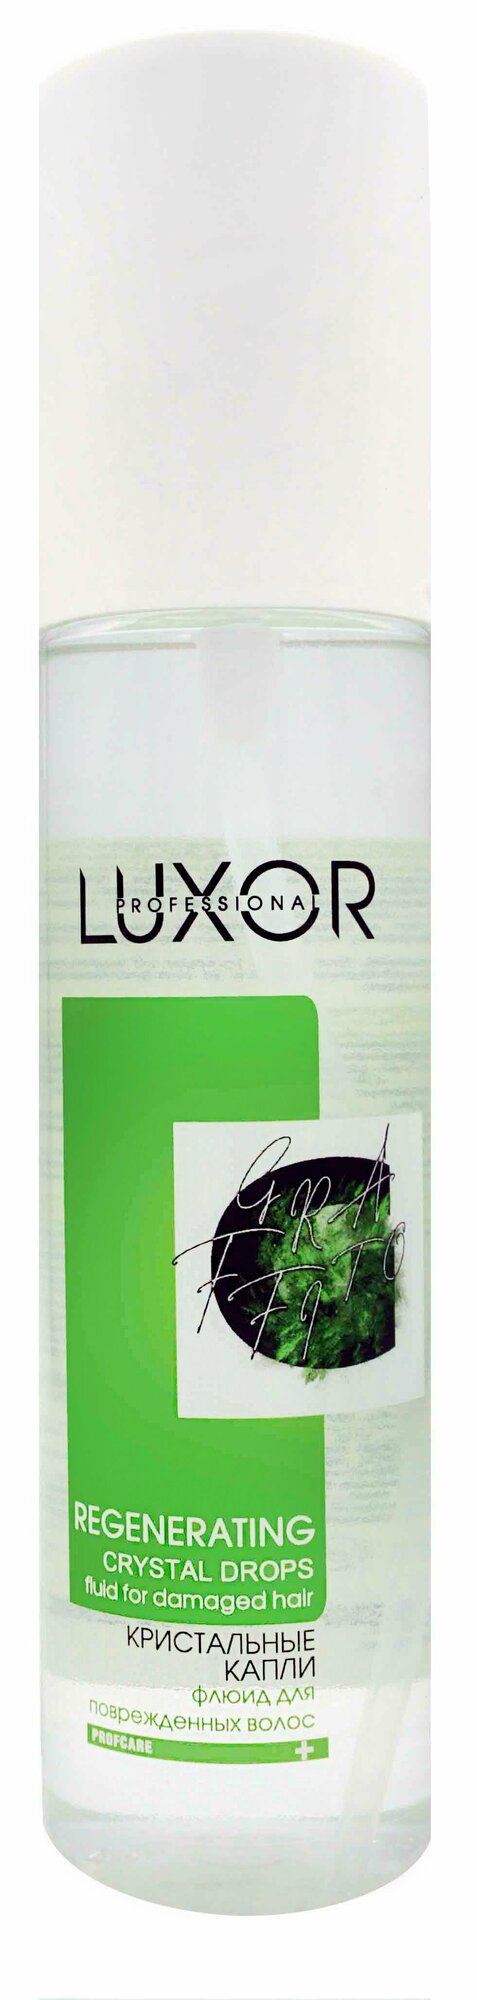 Флюид кристальные капли для поврежденных волос LUXOR Professional – 150 мл